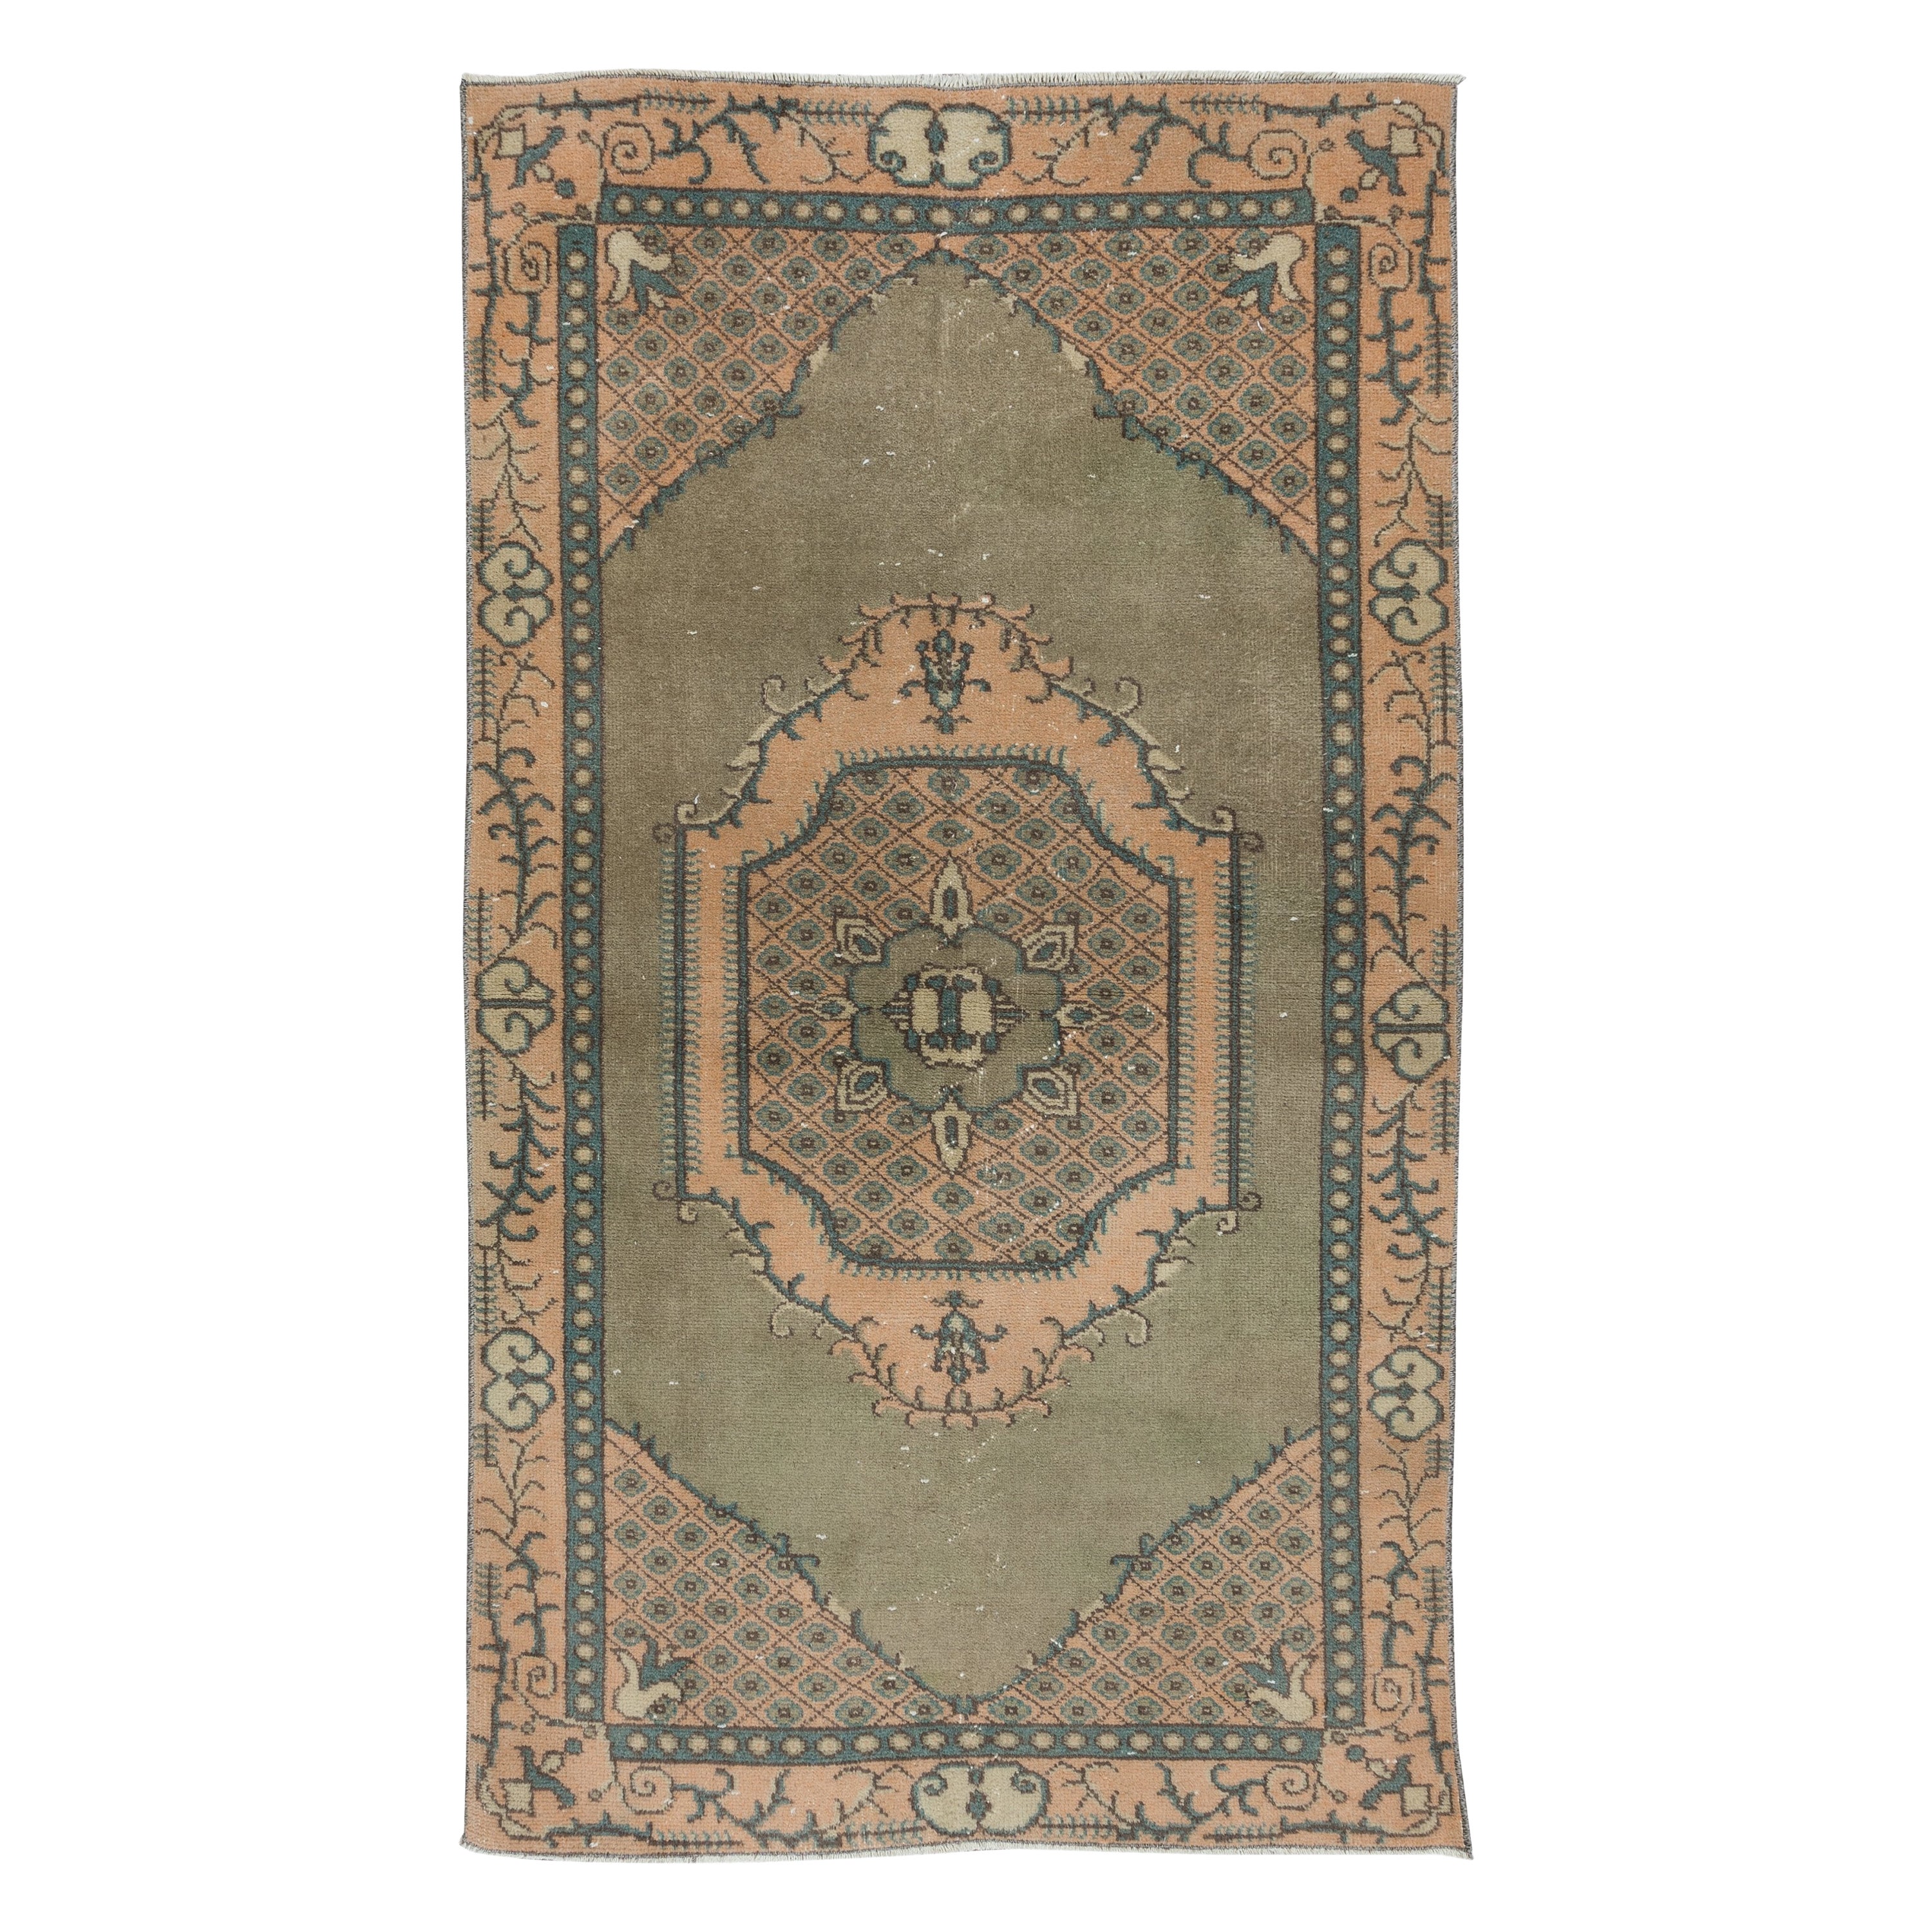 3.7x6.3 Ft Green Accent Rug, Handmade Turkish Geometric Medallion Design Carpet (Tapis turc à motifs géométriques)